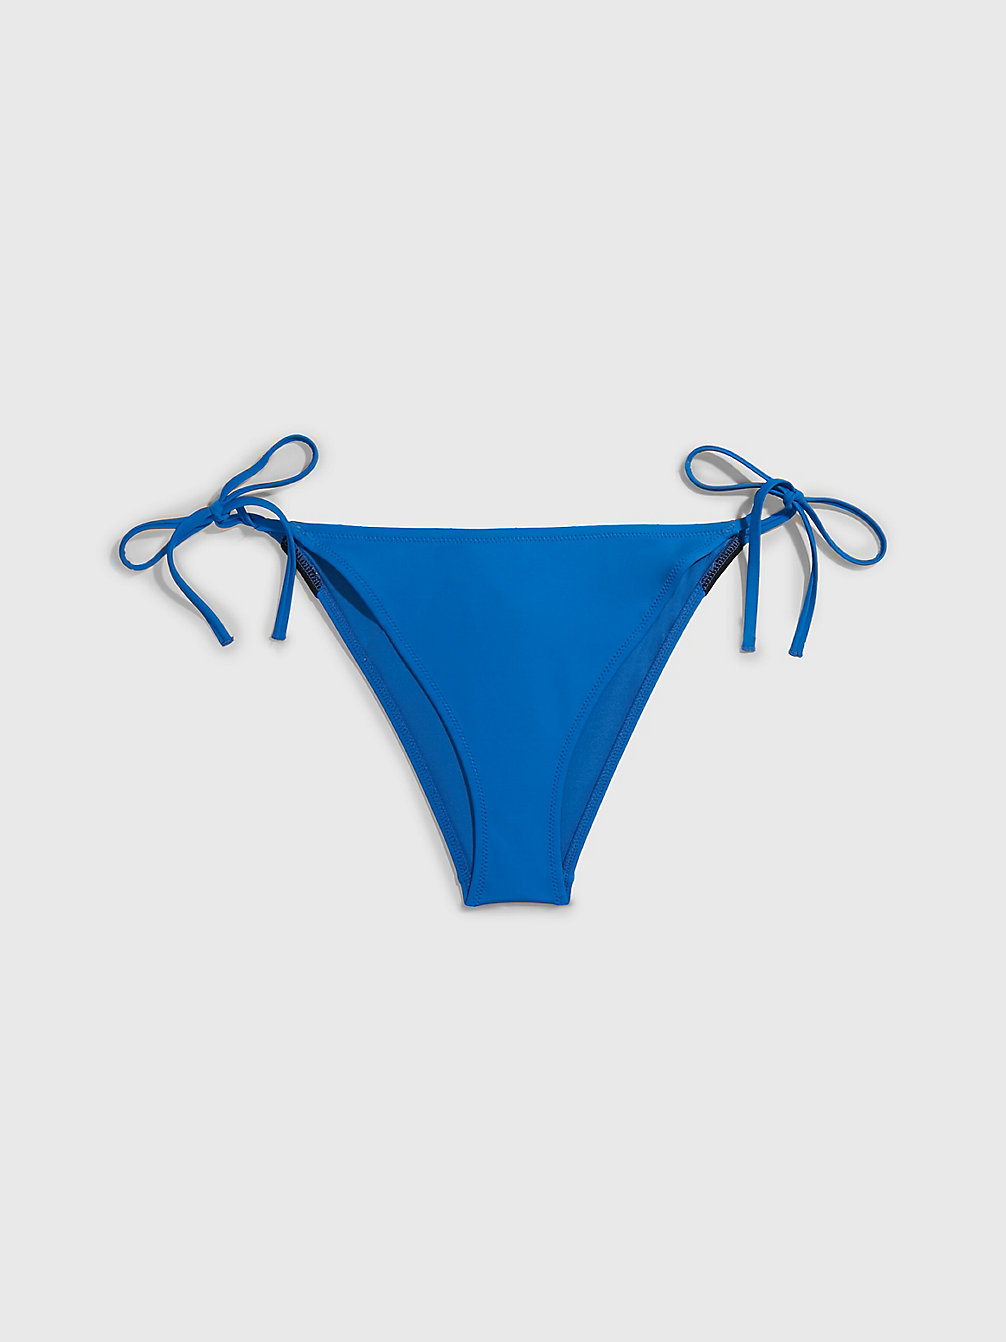 DYNAMIC BLUE Bikinihosen Zum Binden – Intense Power undefined Damen Calvin Klein